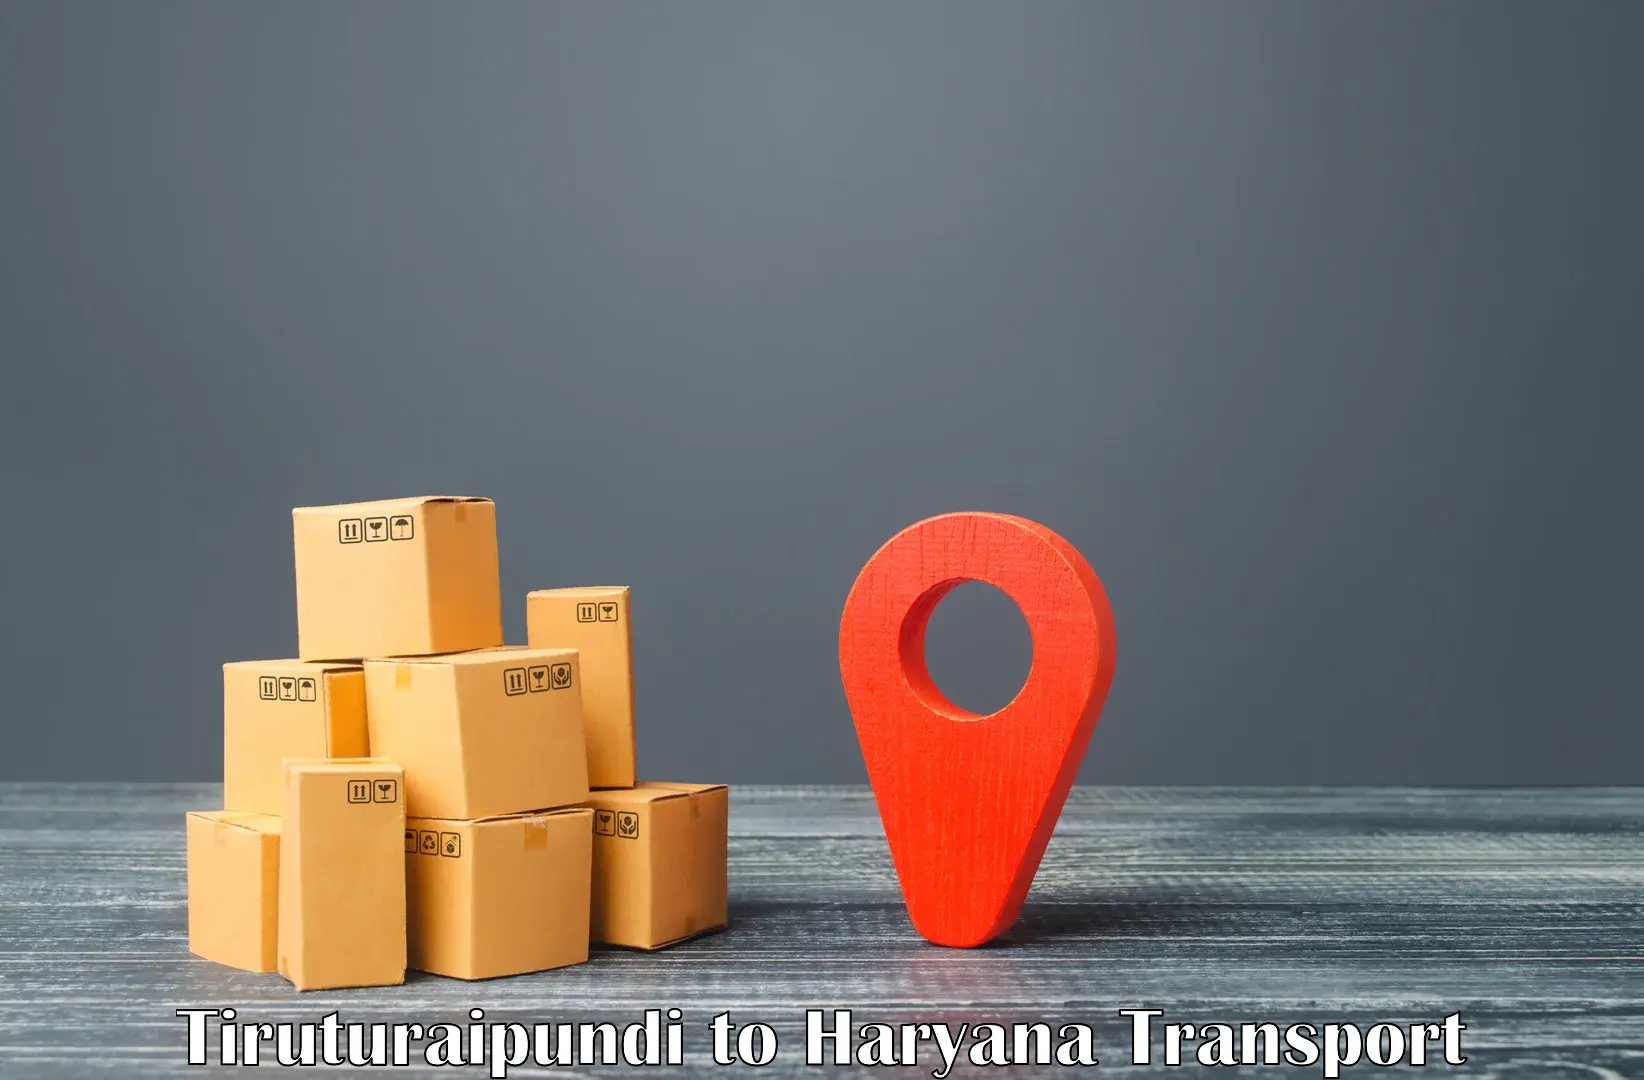 International cargo transportation services Tiruturaipundi to Haryana